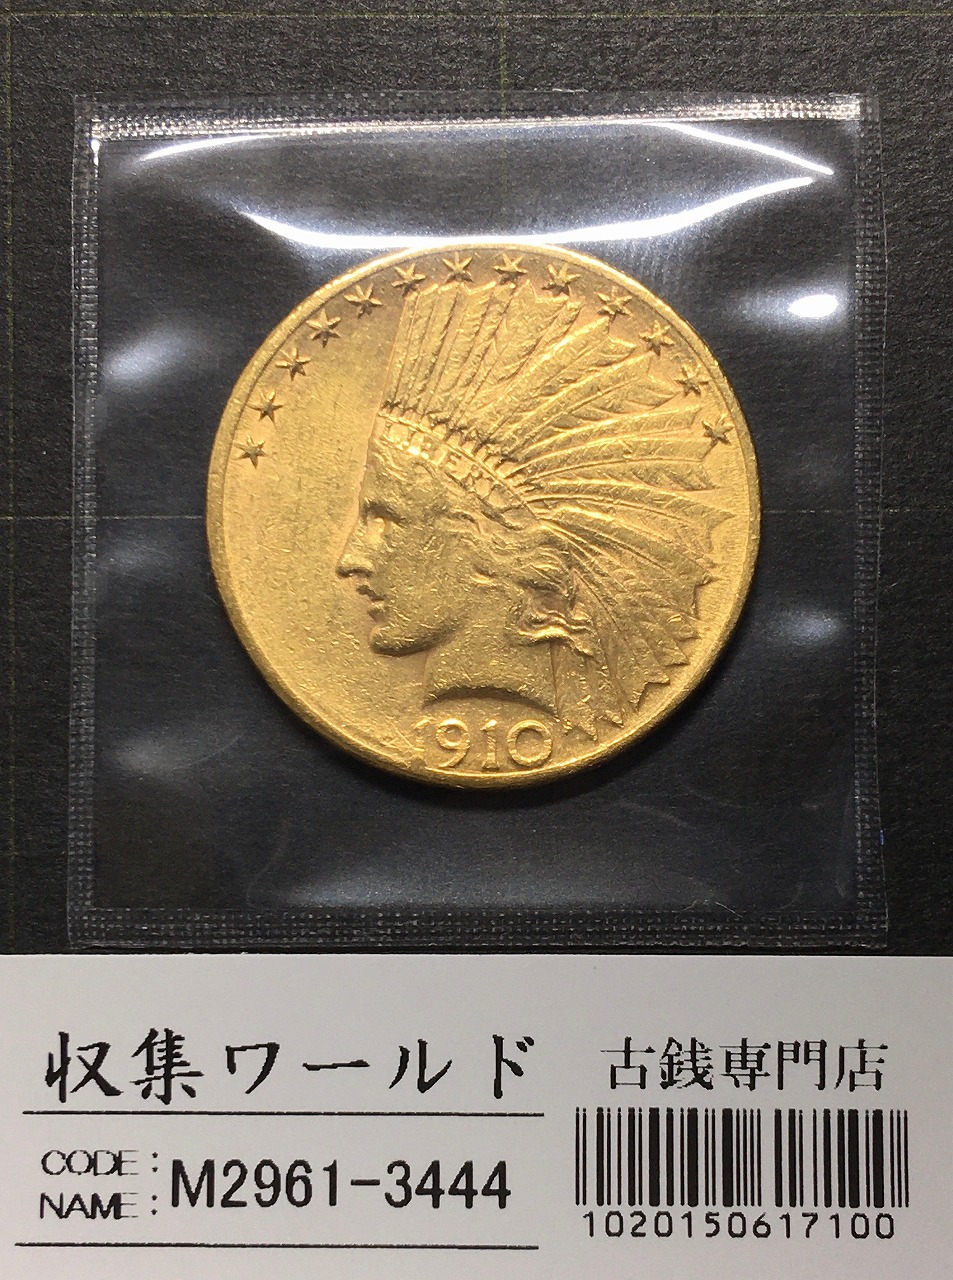 アトランタオリンピック 記念 金貨 - 旧貨幣/金貨/銀貨/記念硬貨